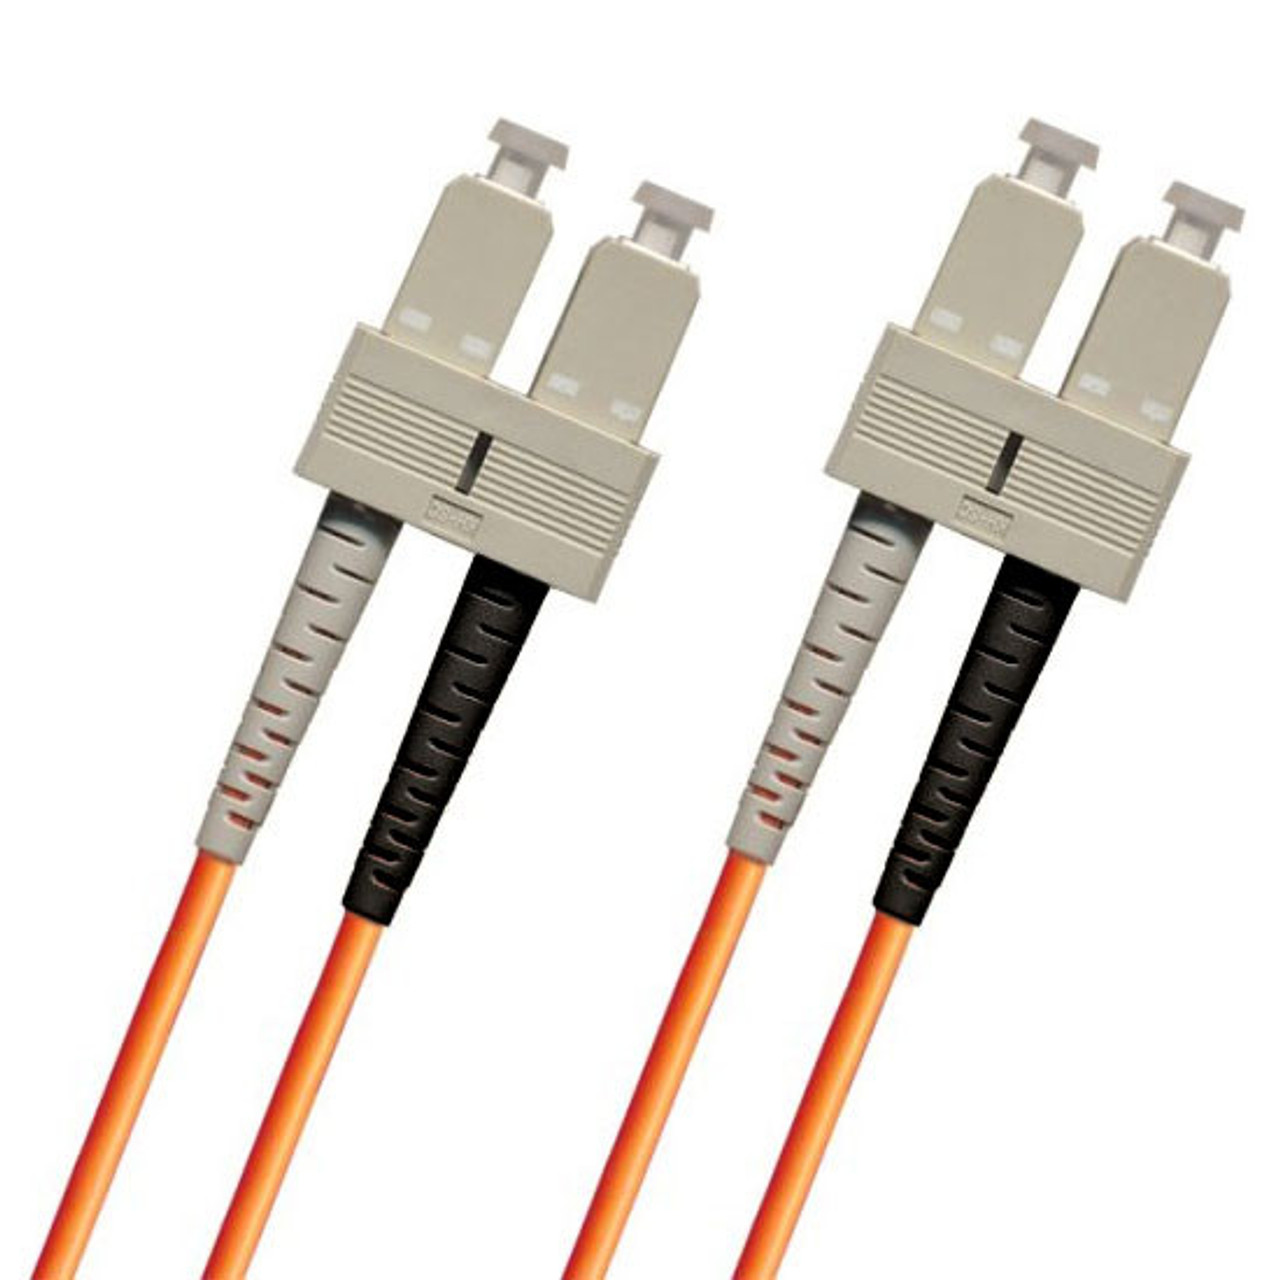 Fiber patch cables with SC connectors